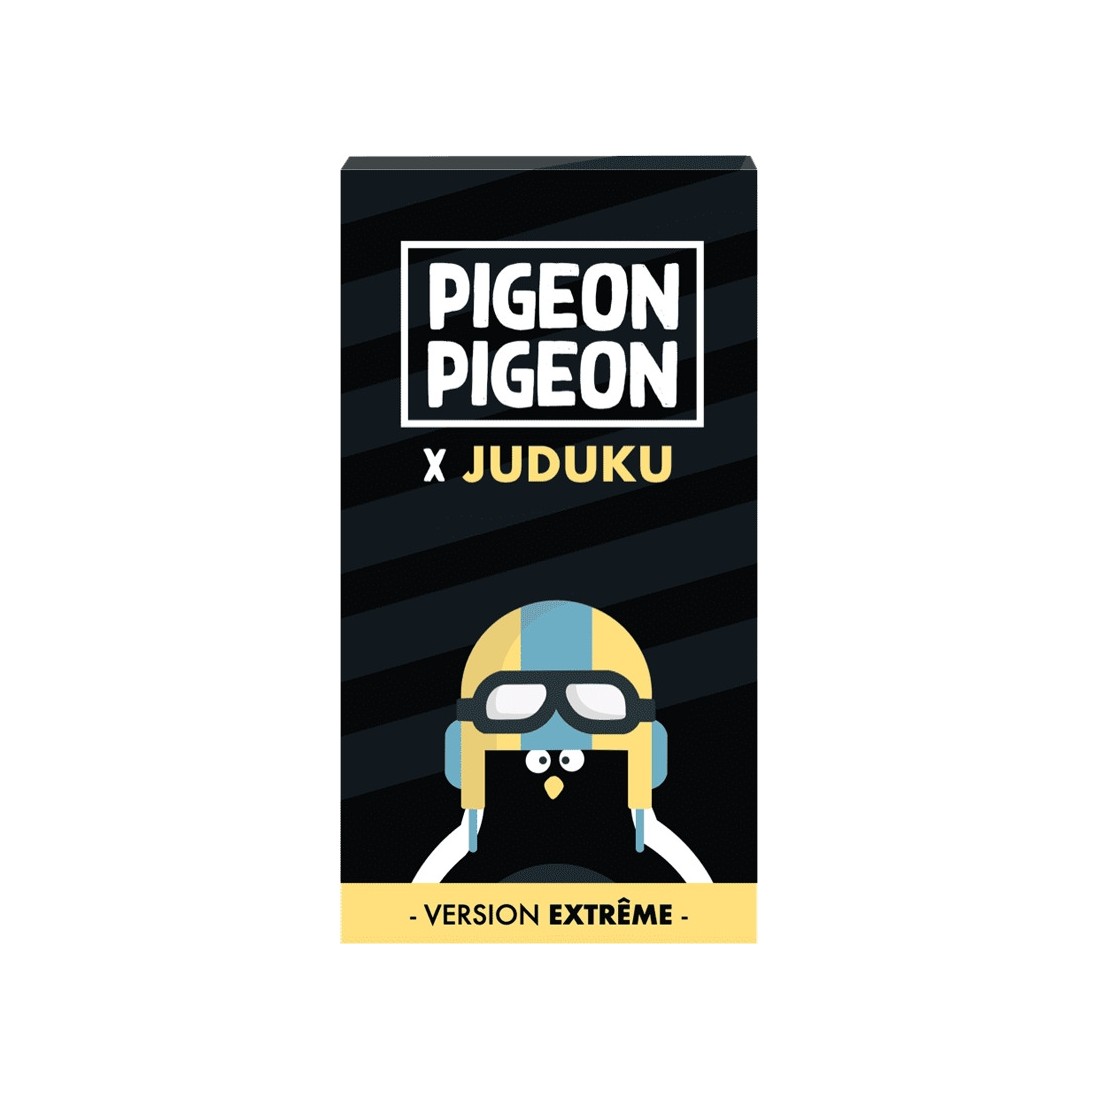 Pigeon Pigeon X Juduku - Jeu de société made in france - Monsieur Basil